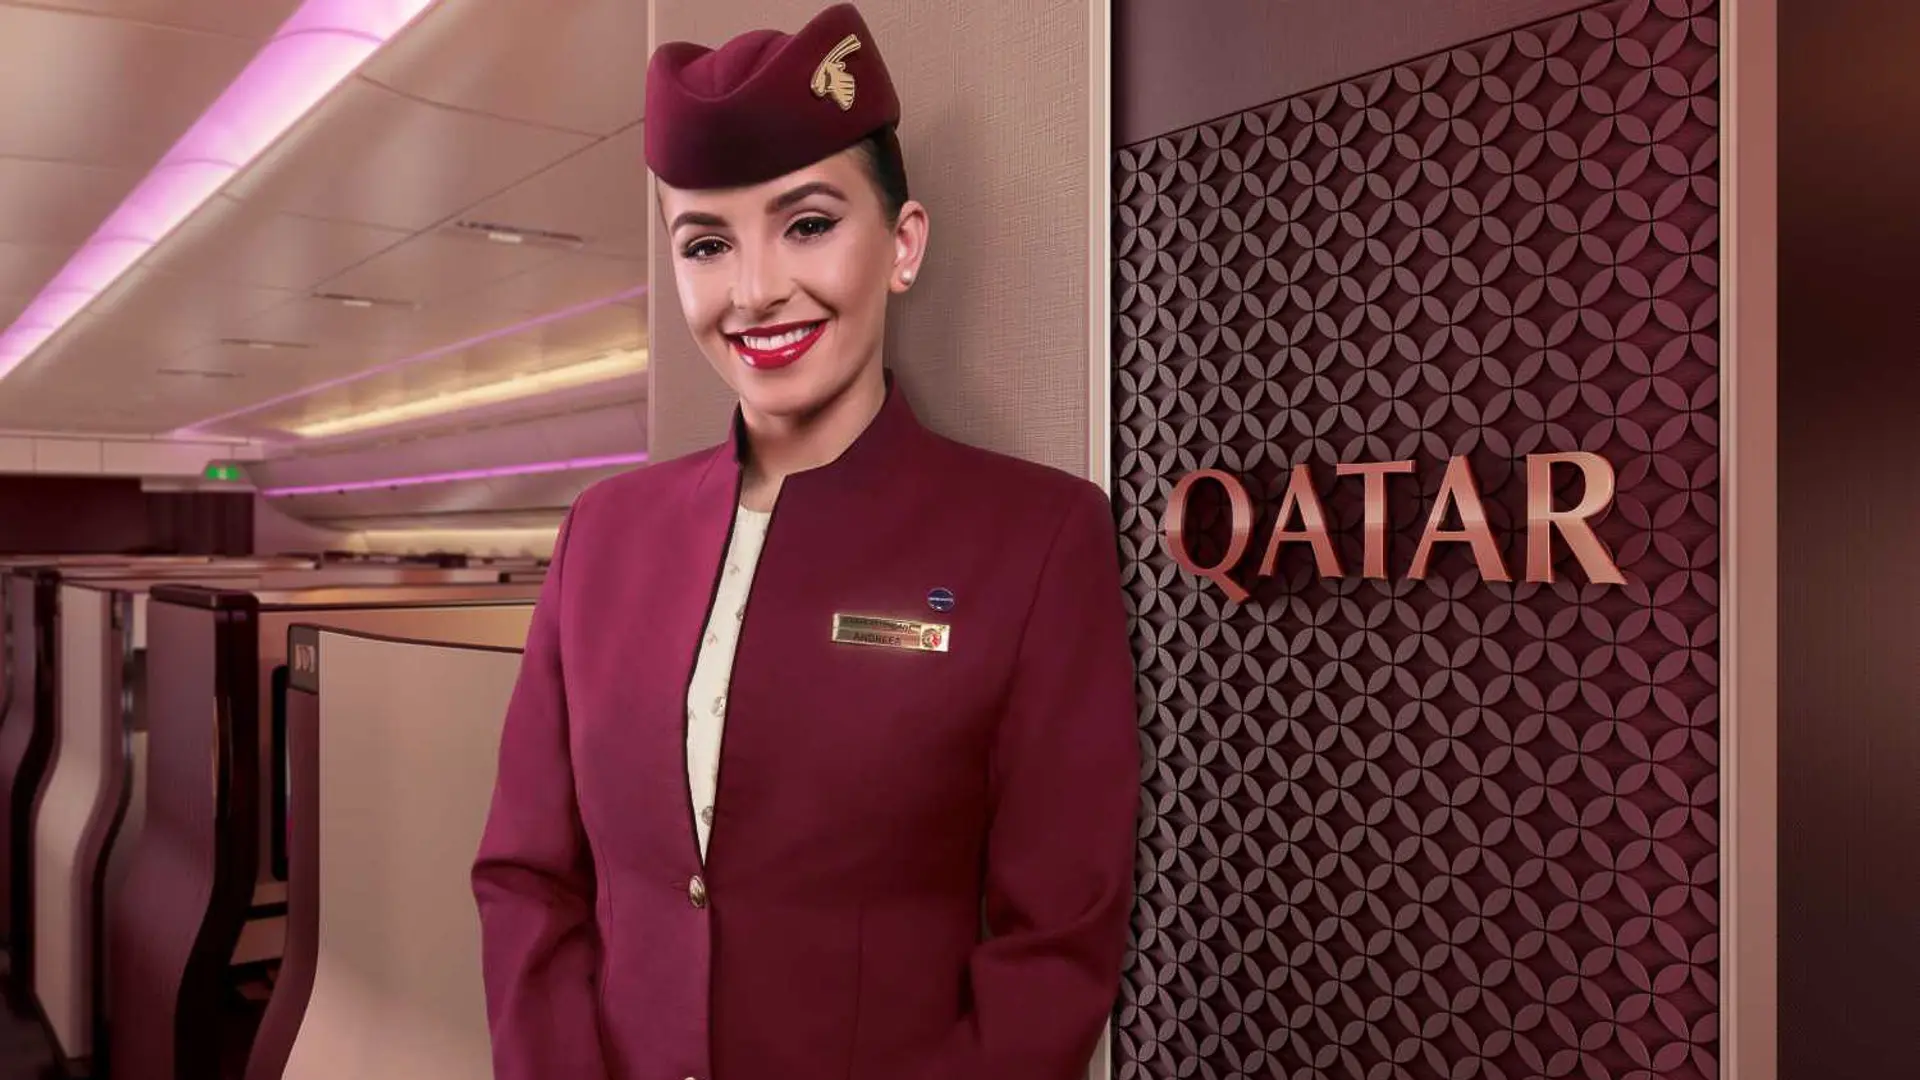 Airline review Service - Qatar Airways - 0